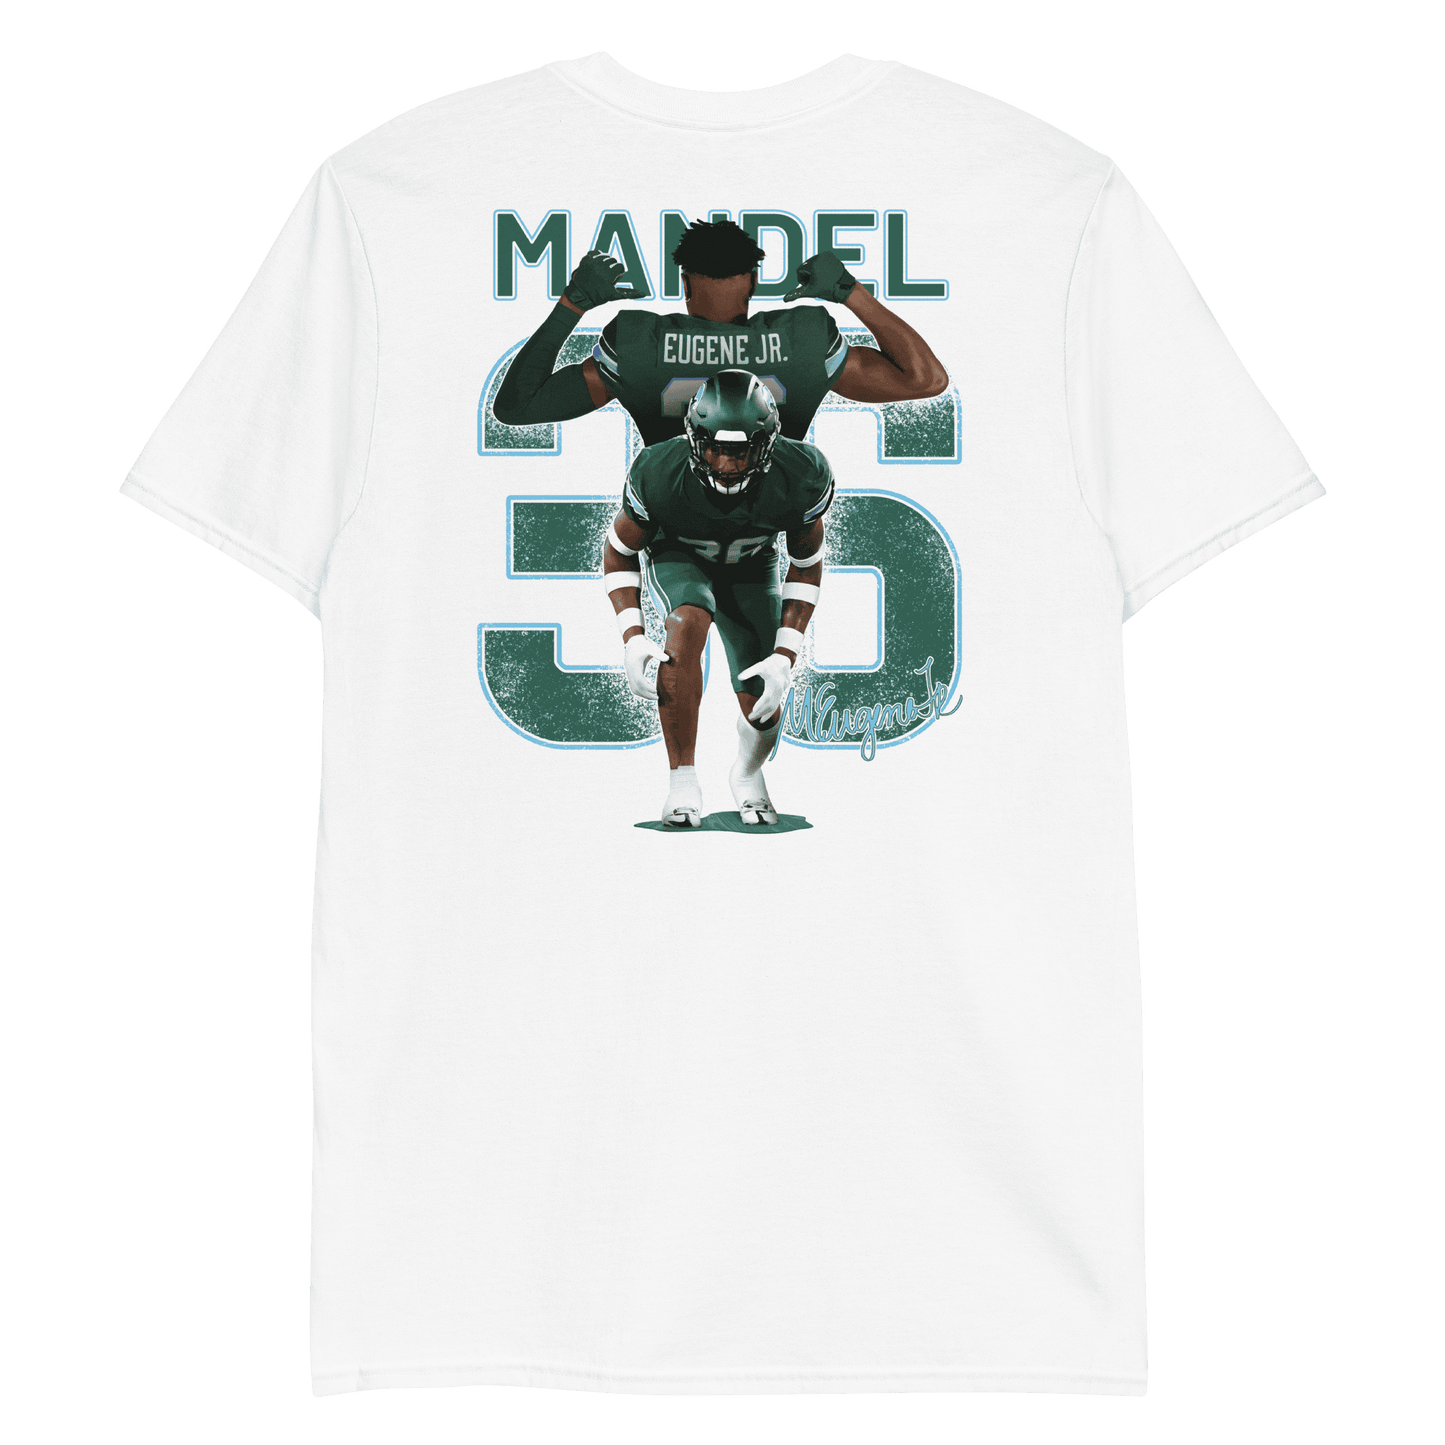 Mandel Eugene Jr. | Mural & Patch T-shirt - Clutch -